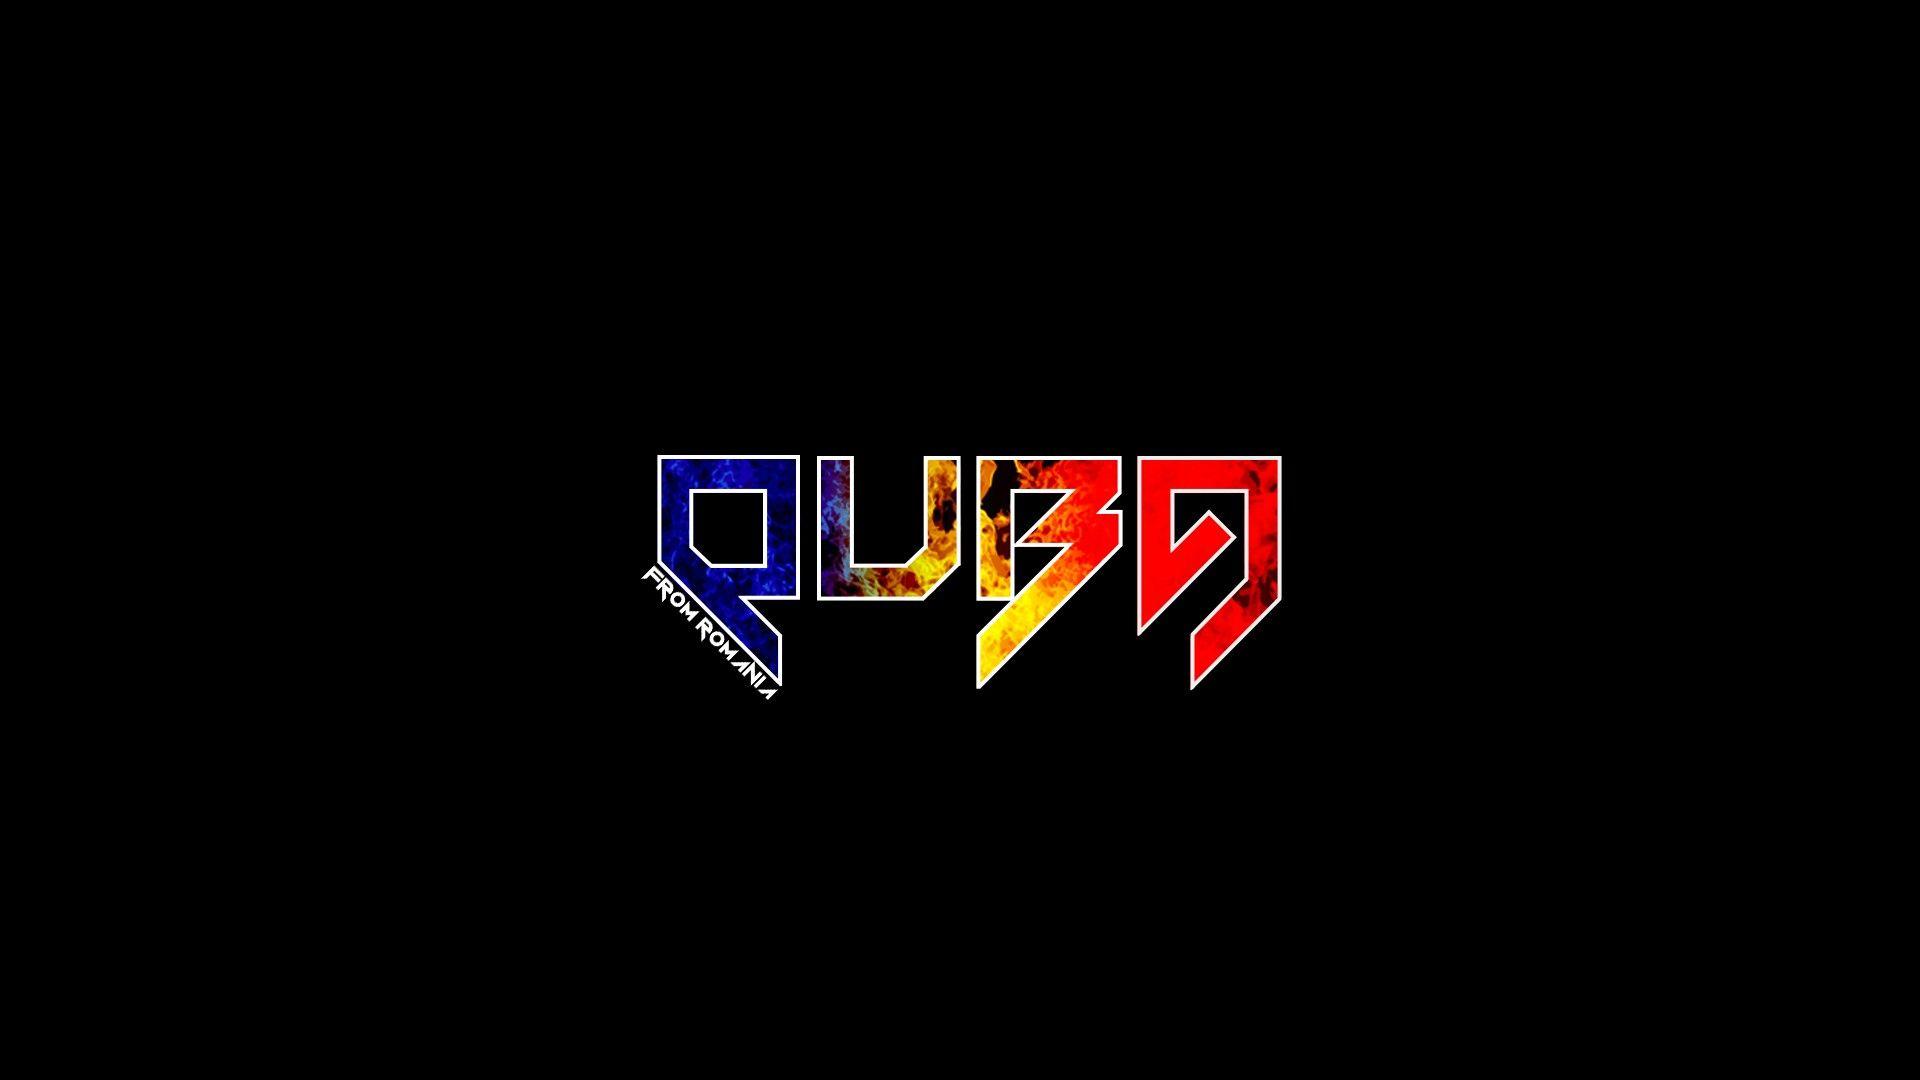 Music fire flags Romania dubstep artist electronic Skrillex Quba